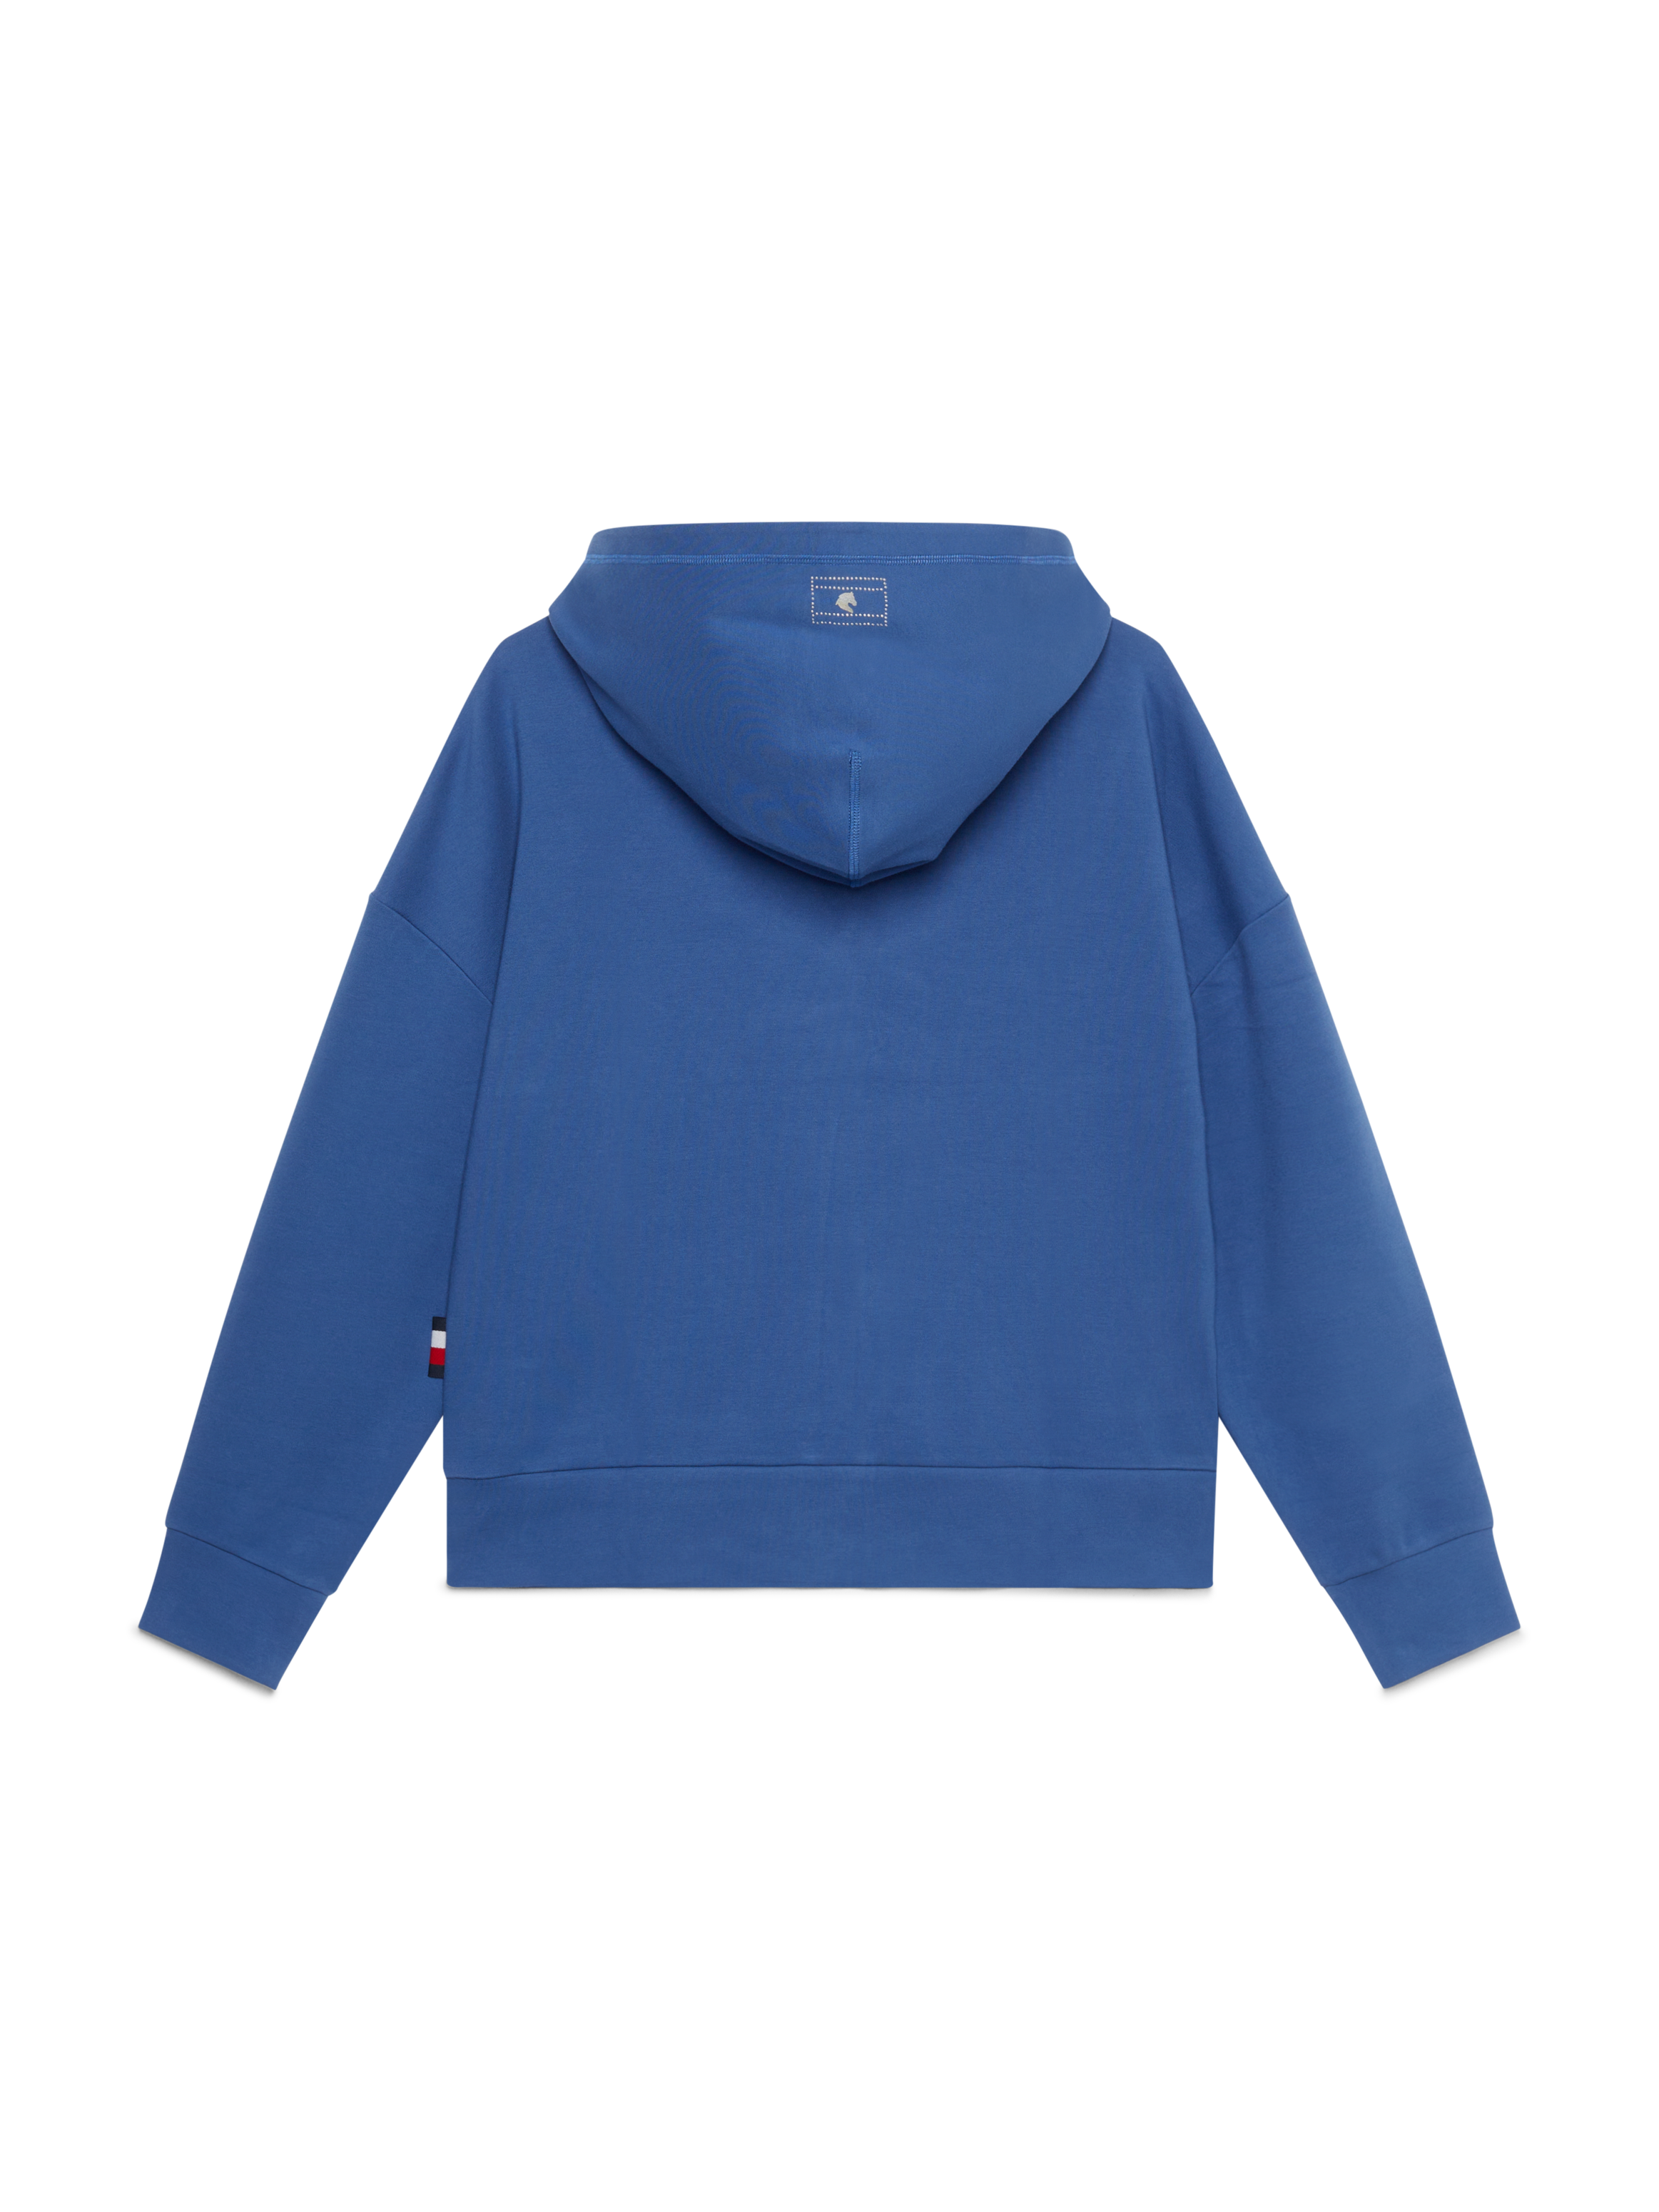 Tommy Hilfiger - Dame, hoodie oversized med nitte-logo, Paris, lyseblå